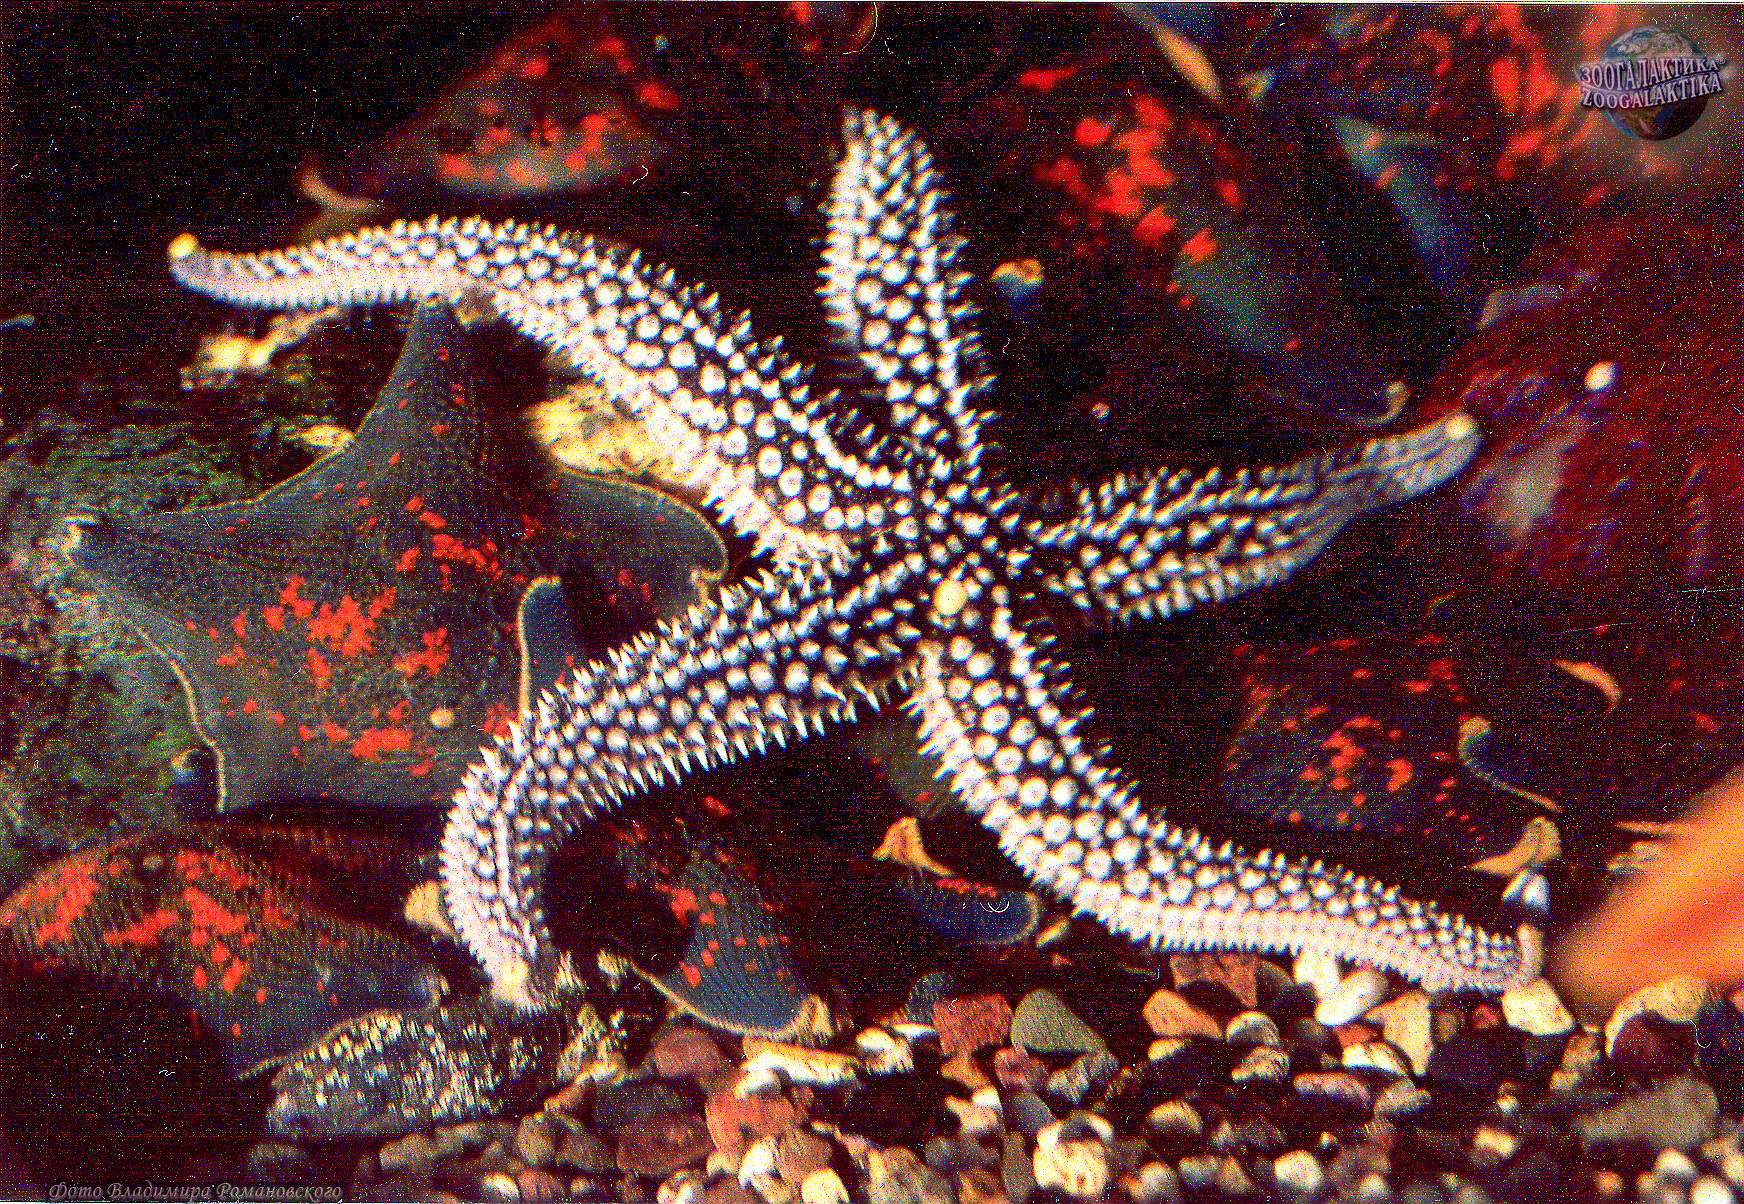 Амурская морская звезда (Asterias amurensis)